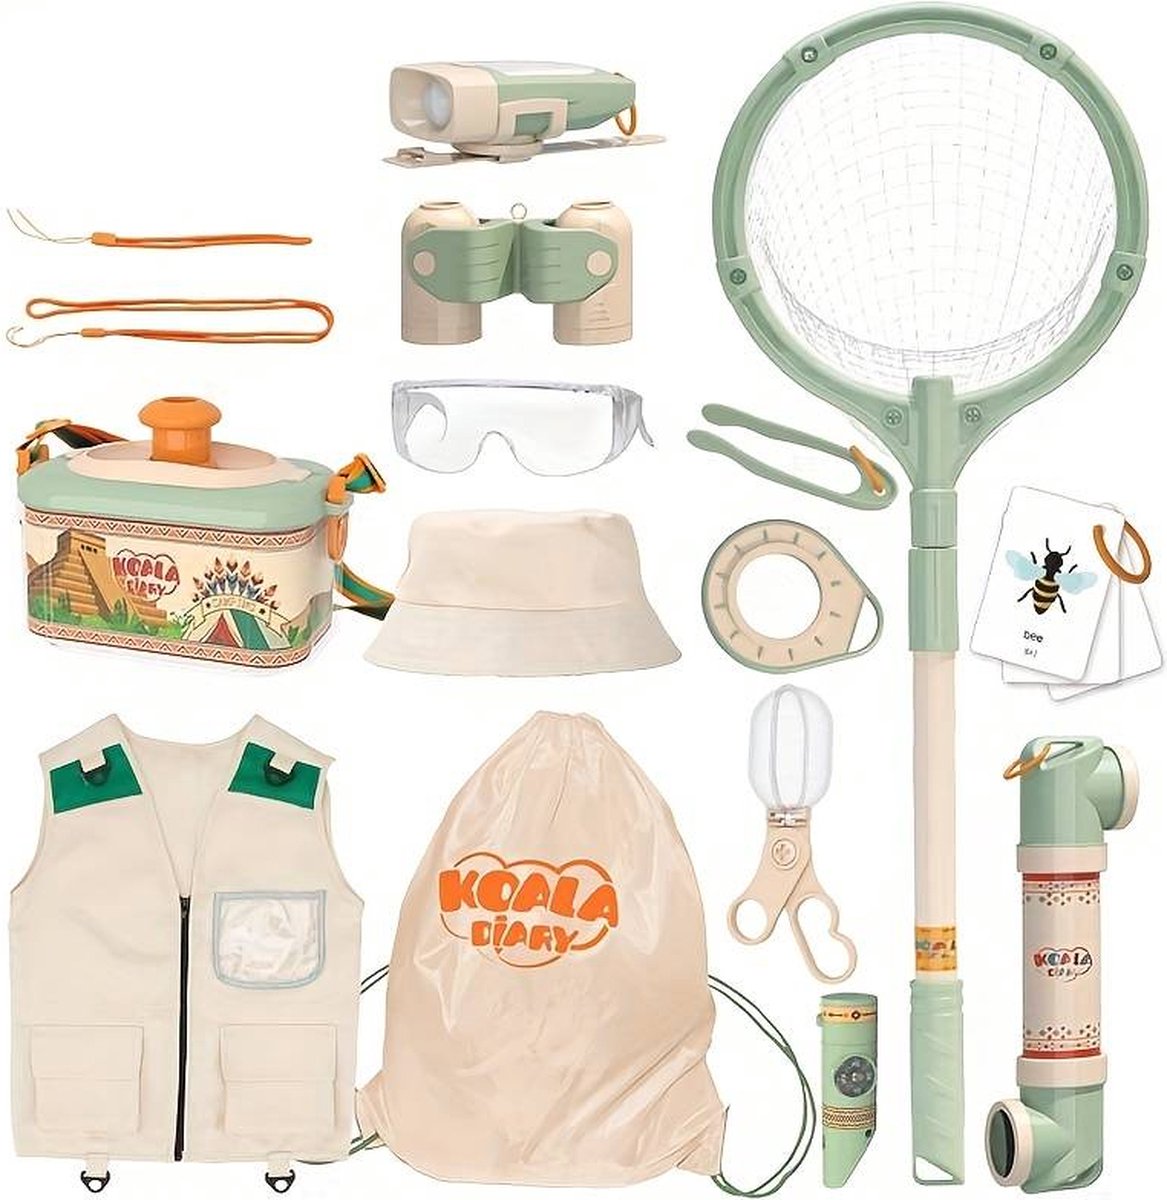 Koala Diary- Bug kit - Explorer set- Avontuurlijk speelgoed- Scouting speelgoed- Verjaardagscadeau- Insecten- Buiten speelgoed - DM OnlineProducts